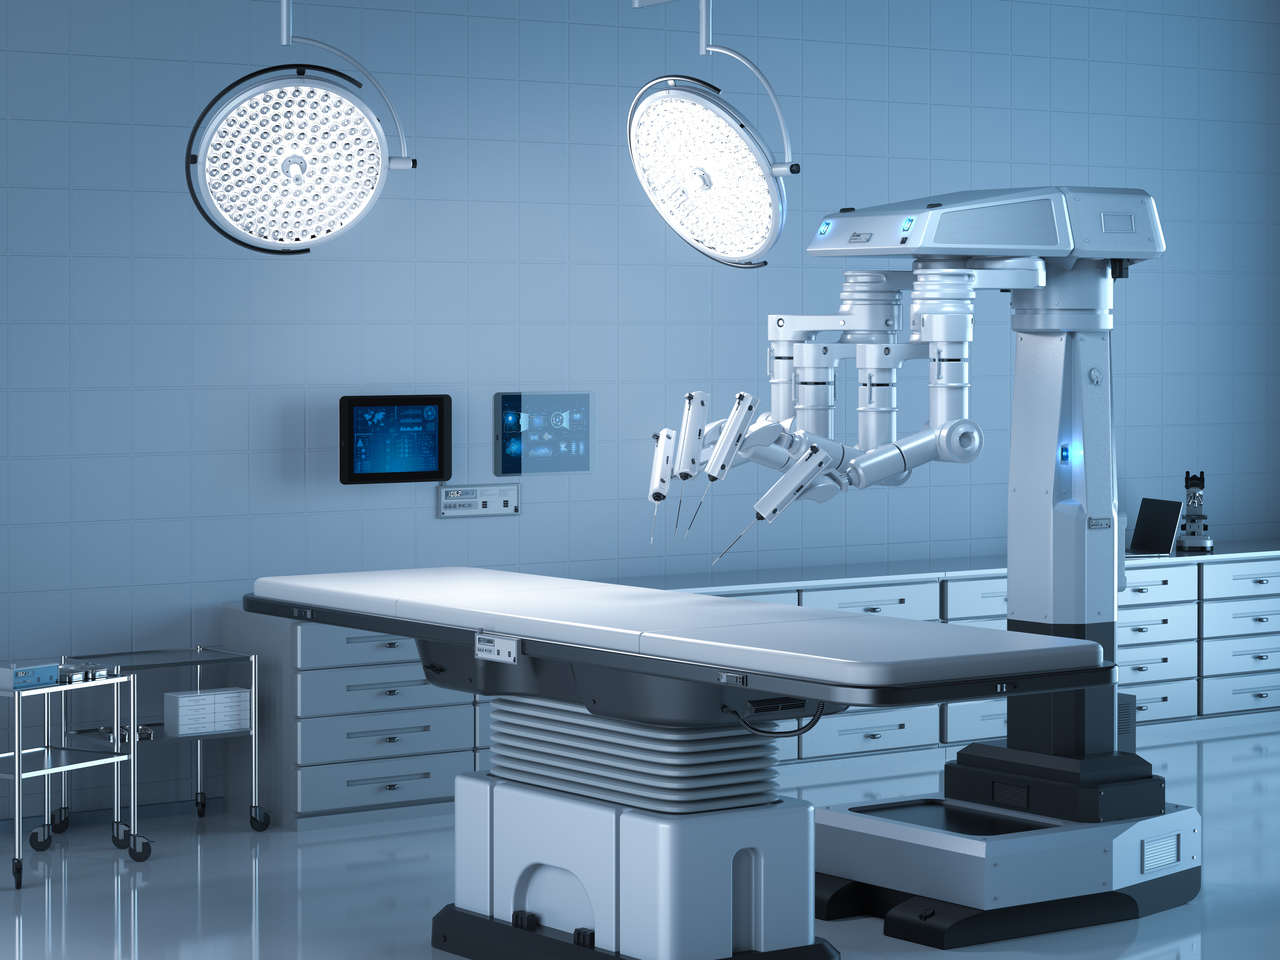 Cirurgia Robótica Goiânia-Como funciona a Cirurgia Robótica e quais os riscos